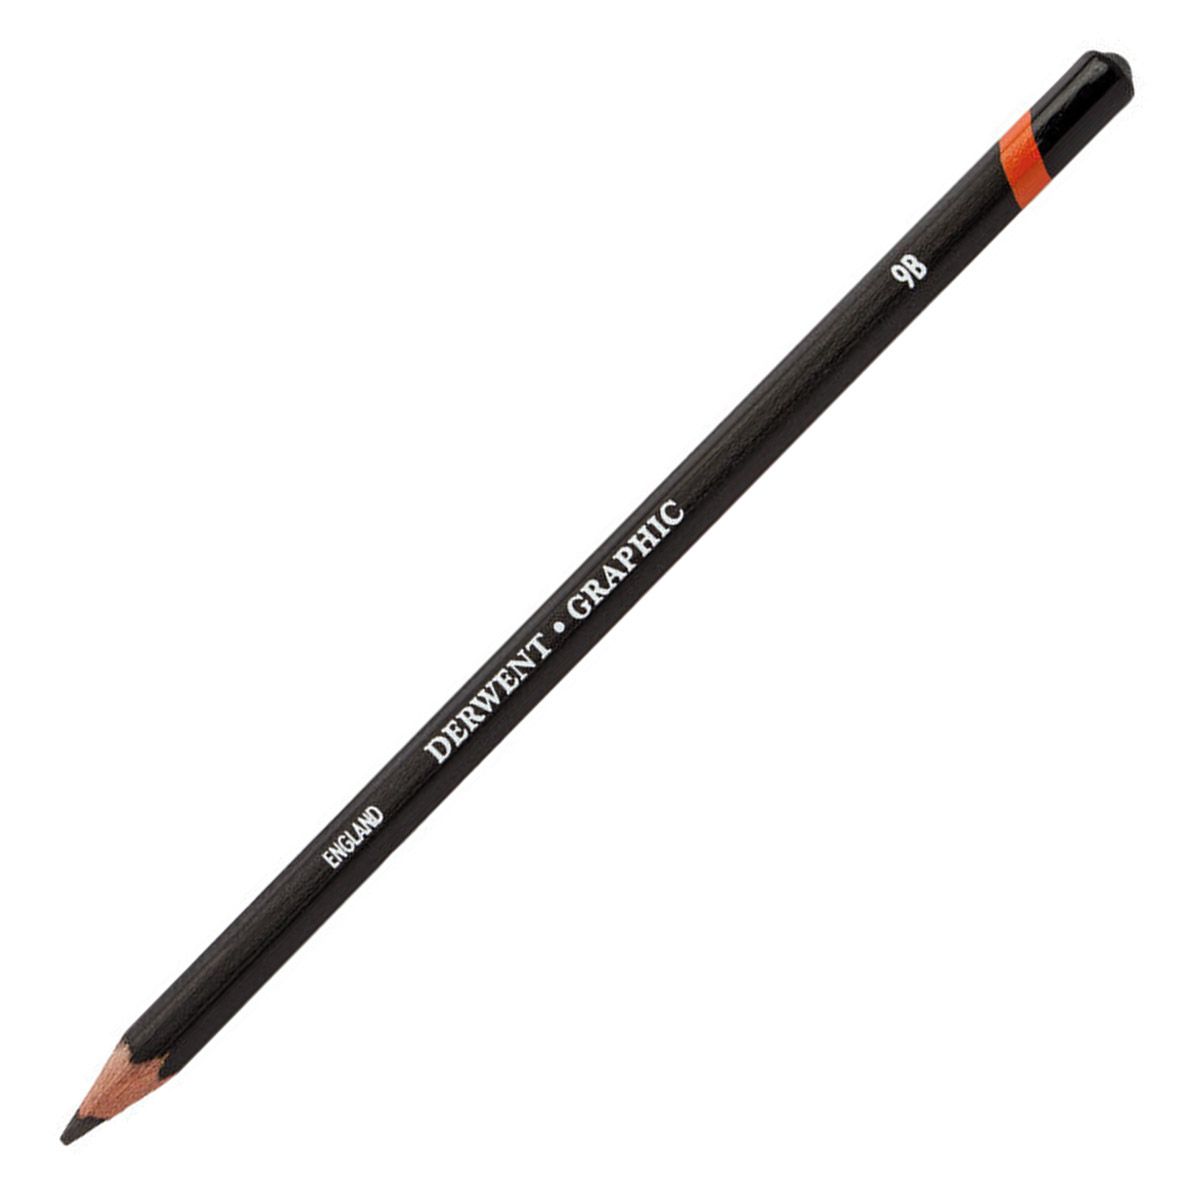 Derwent Graphic Pencil - 9B